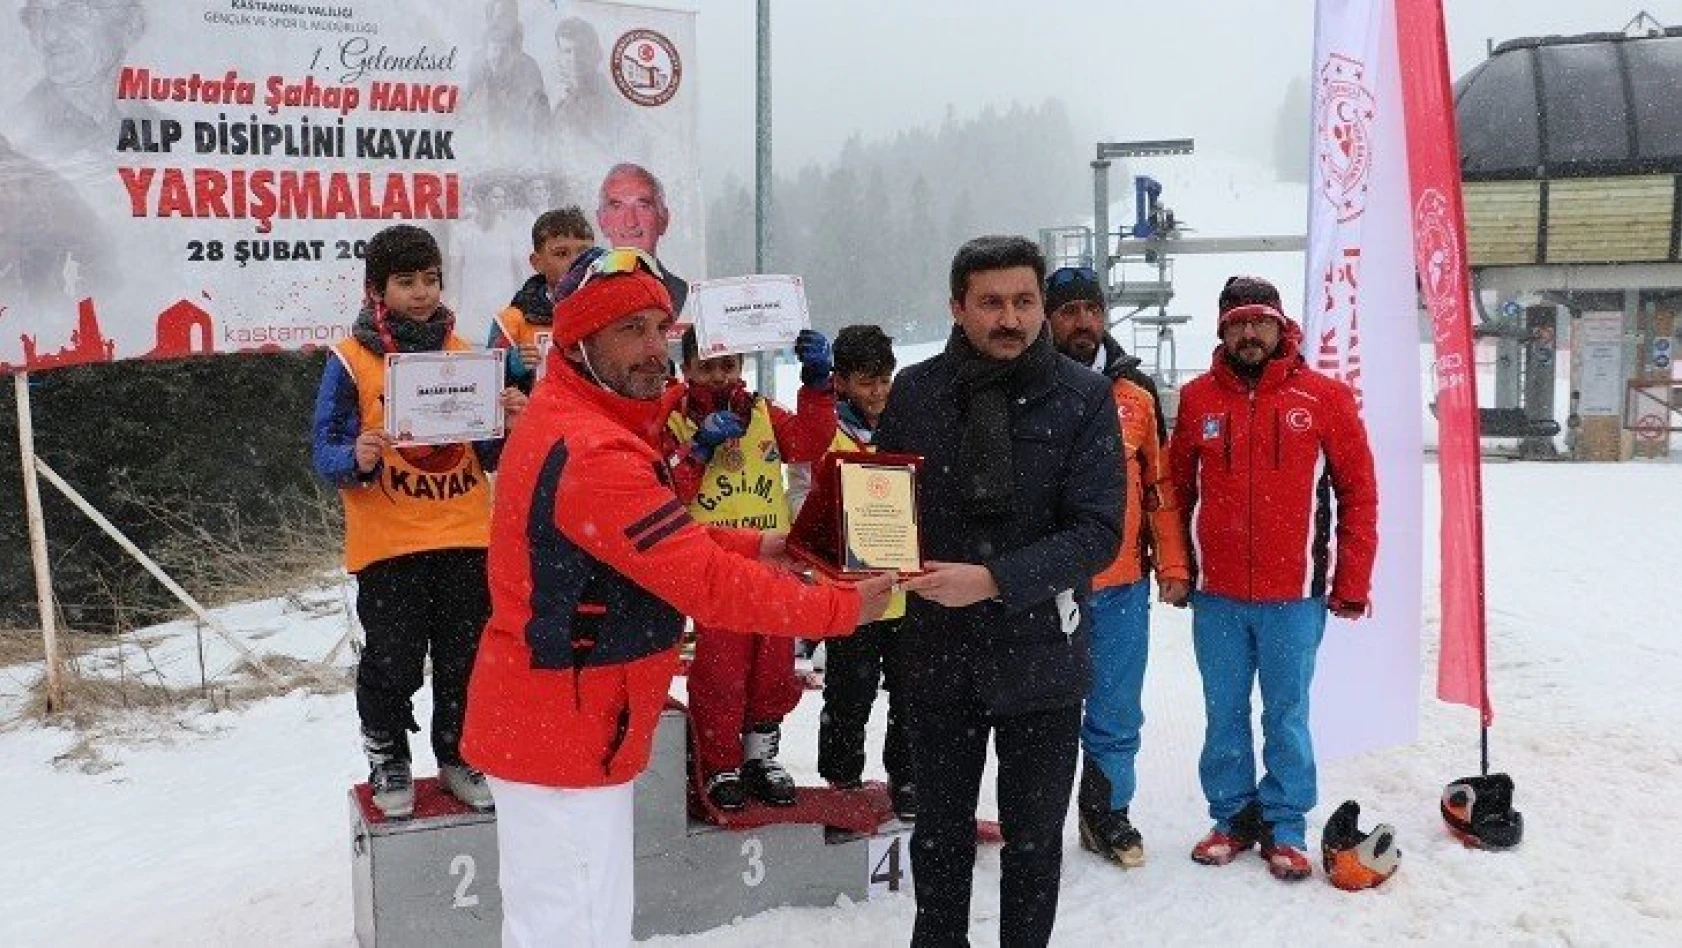 Alp Disiplini Kayak Yarışmaları, Ilgaz Dağı'nda düzenlendi